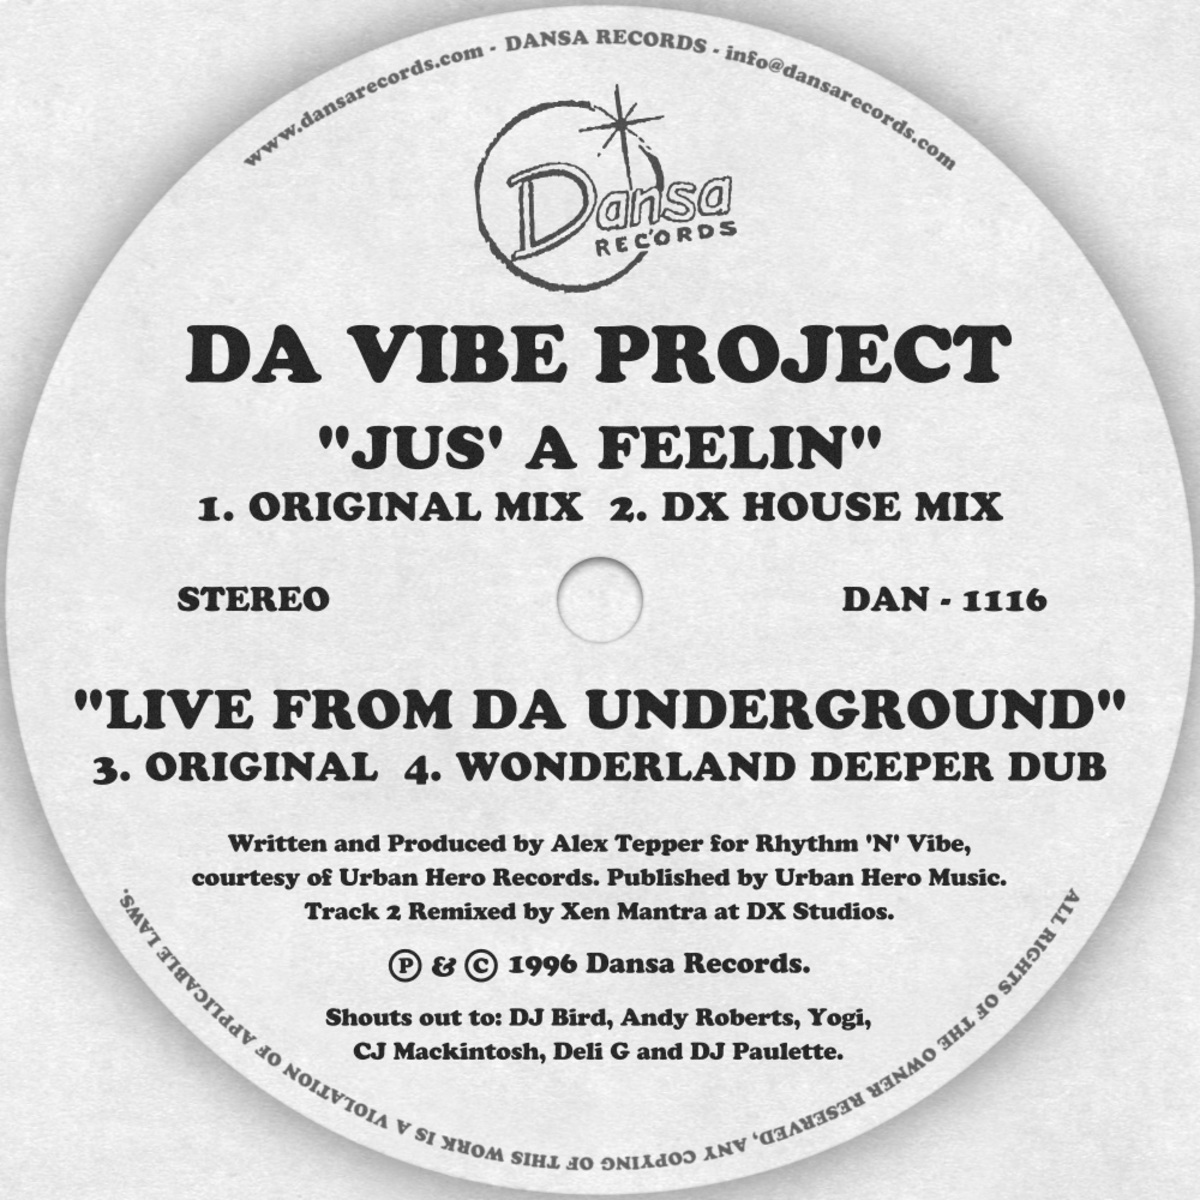 Da Vibe Project - Jus' A Feelin' / Live From Da Underground / Dansa Records